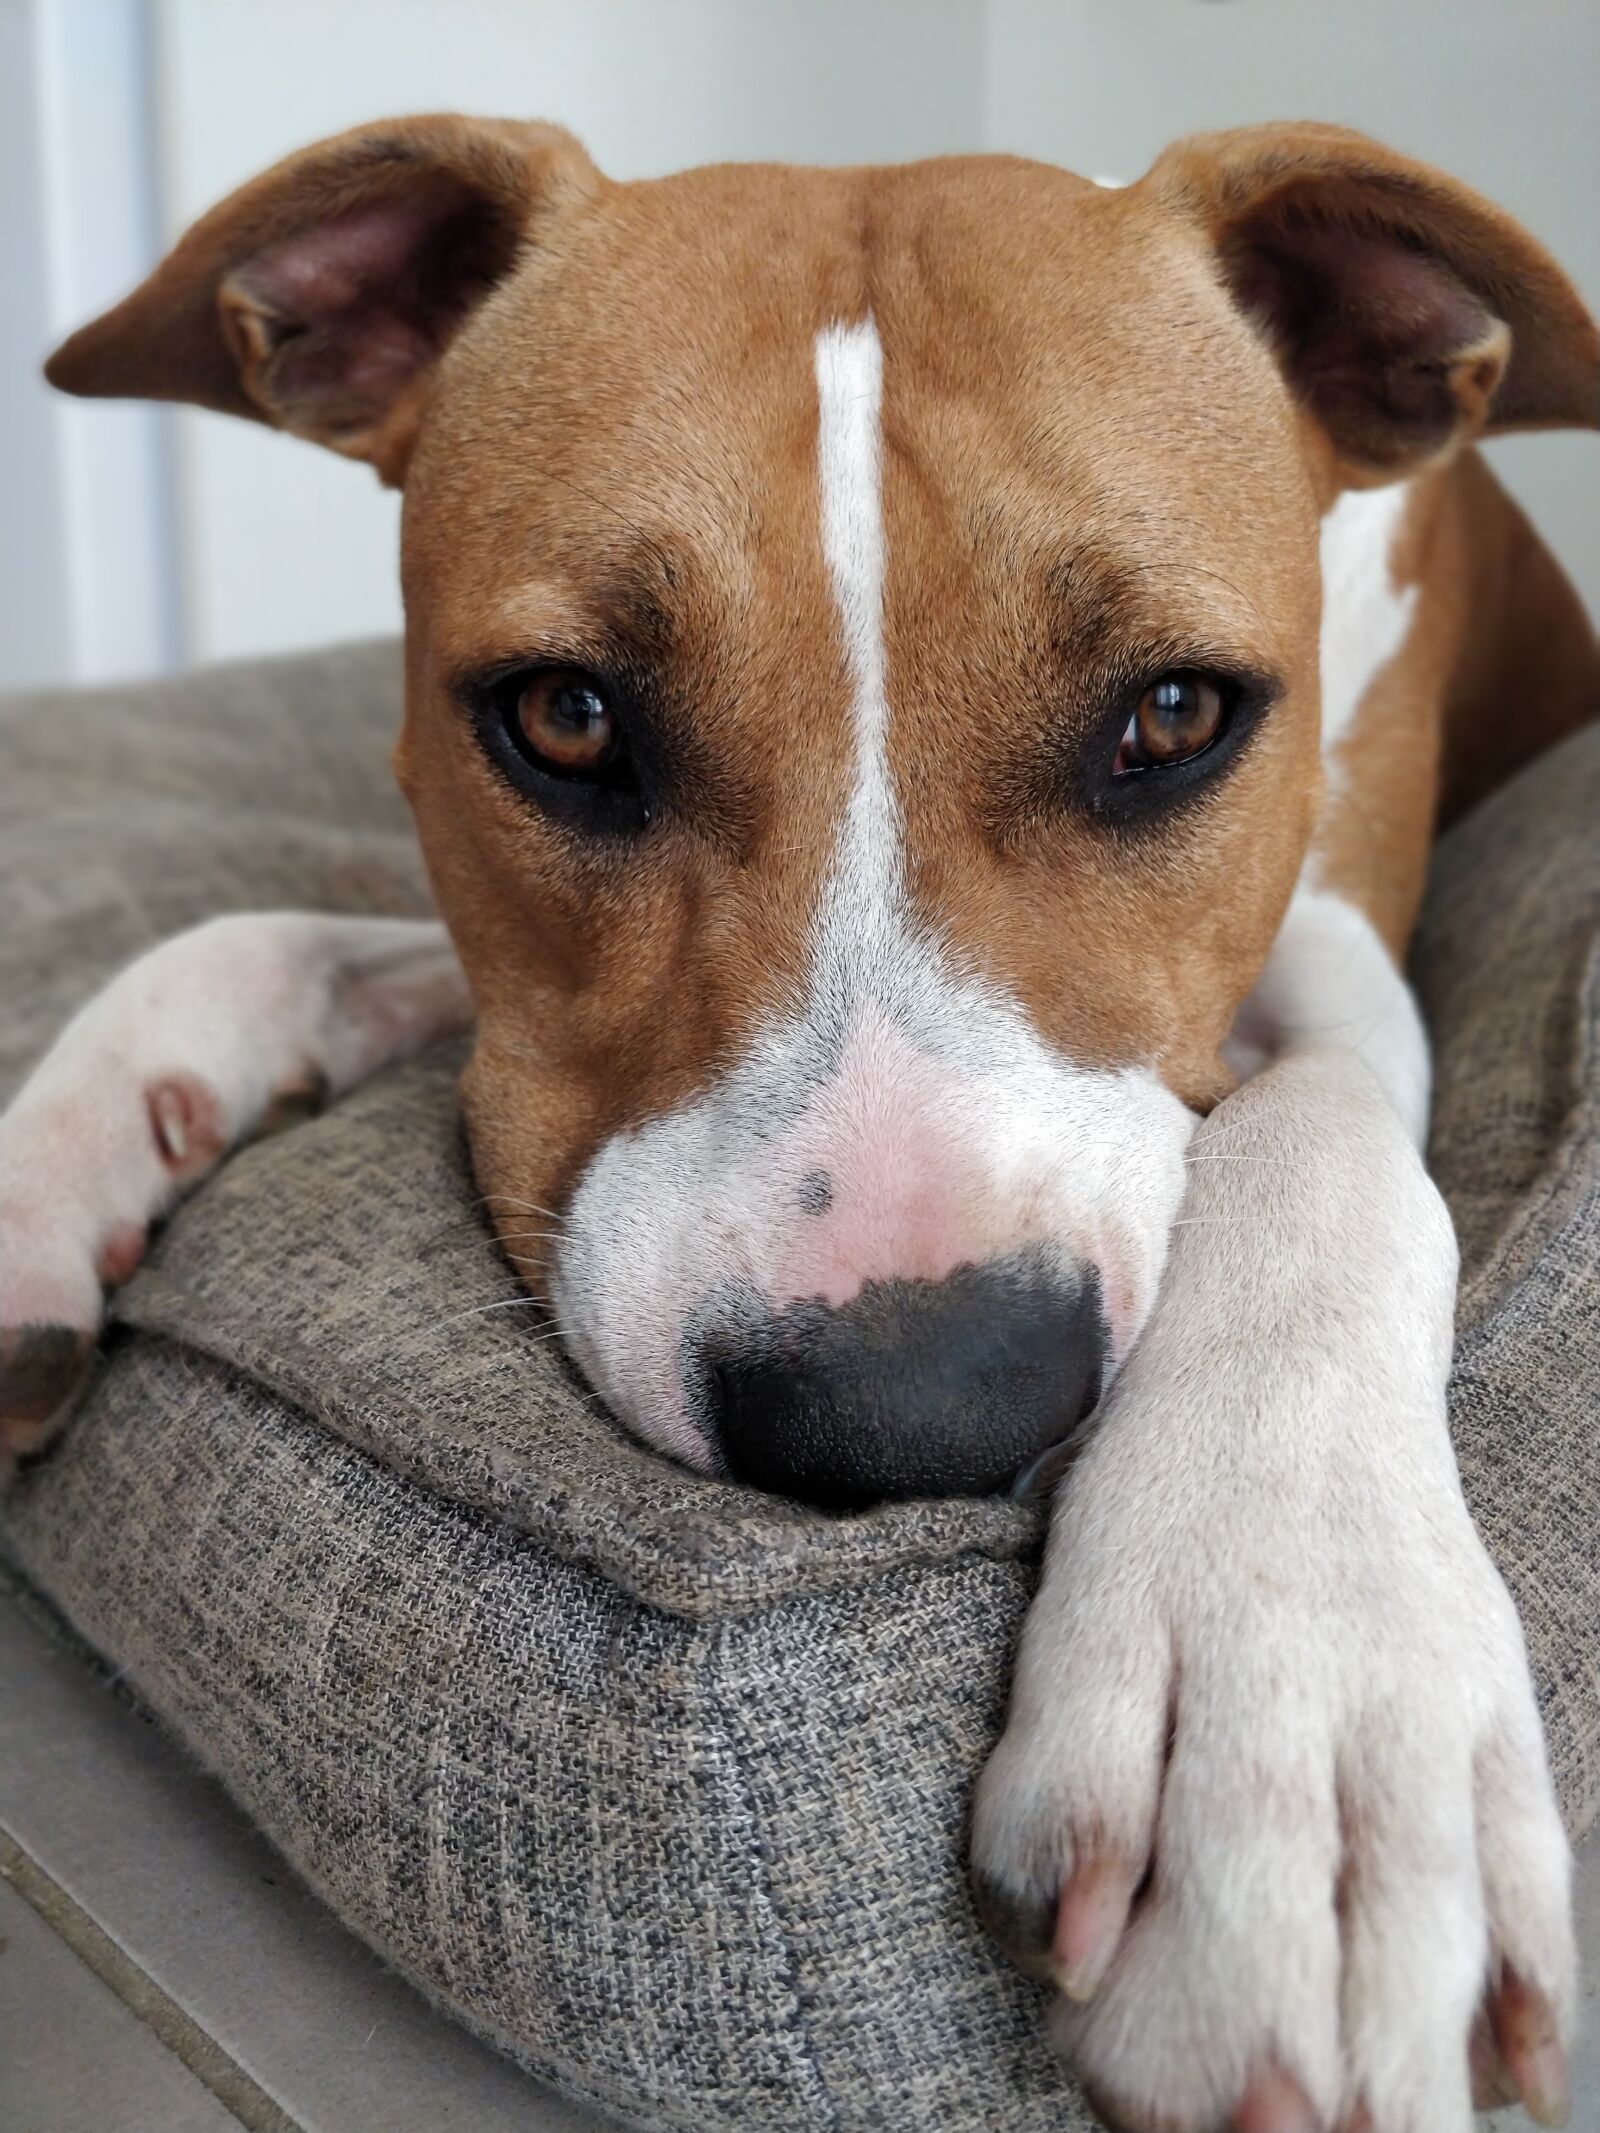 OnePlus 5T sample photo. Dog, baby, cushion photography